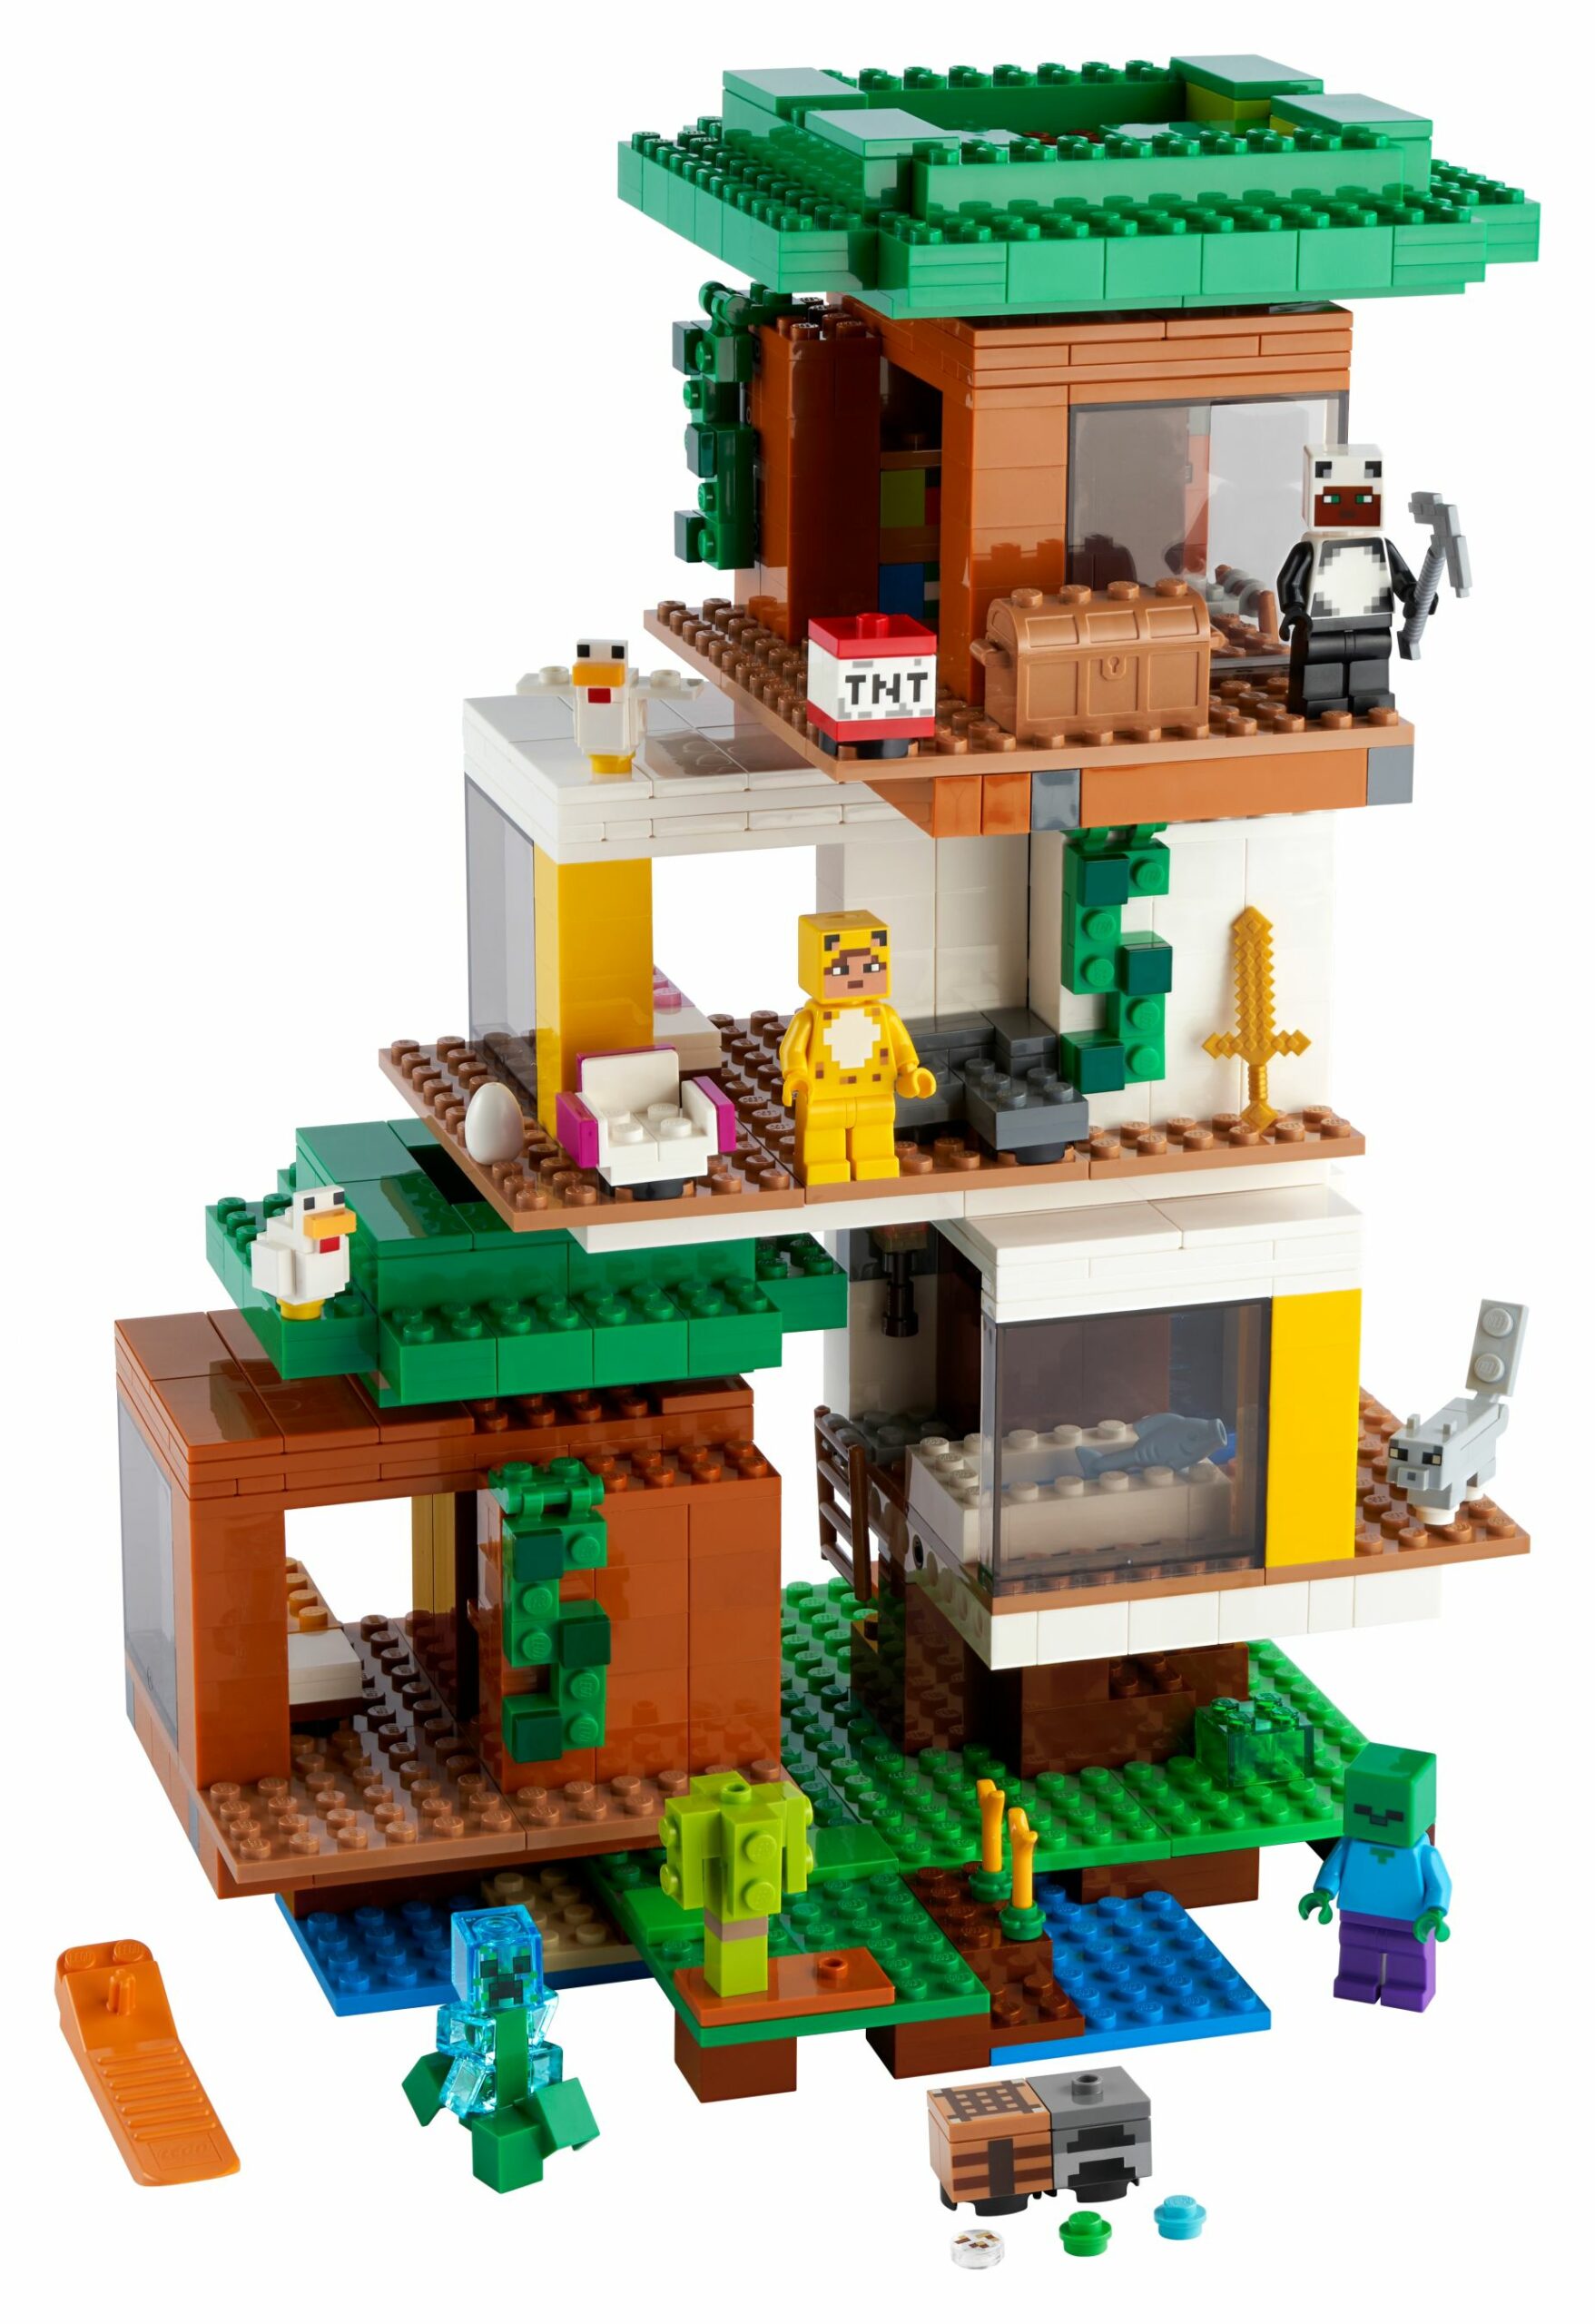 LEGO Minecraft Das moderne Baumhaus 21174